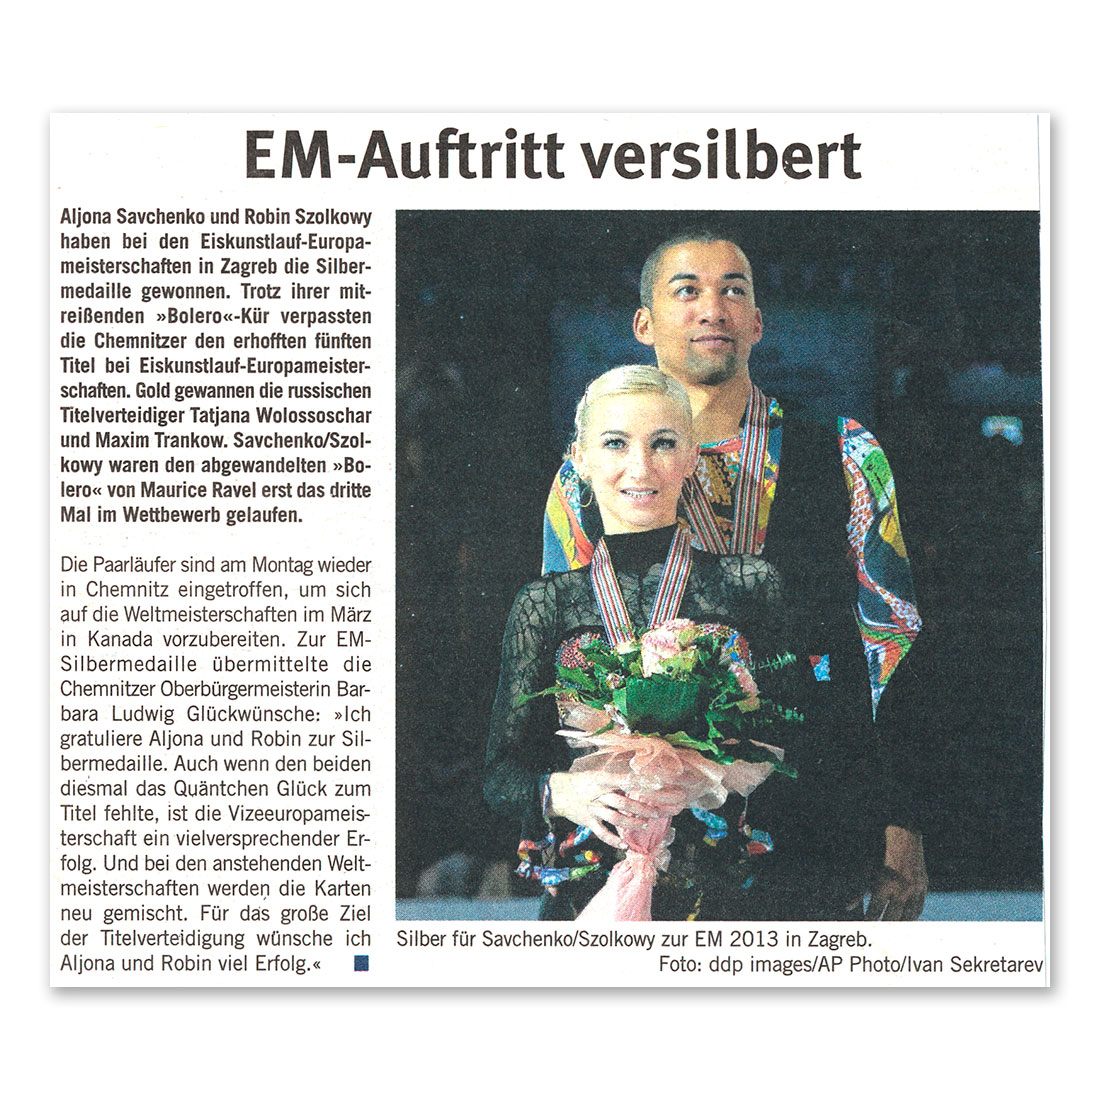 GERMENS artfashion - Amtsblatt Chemnitz - 2014